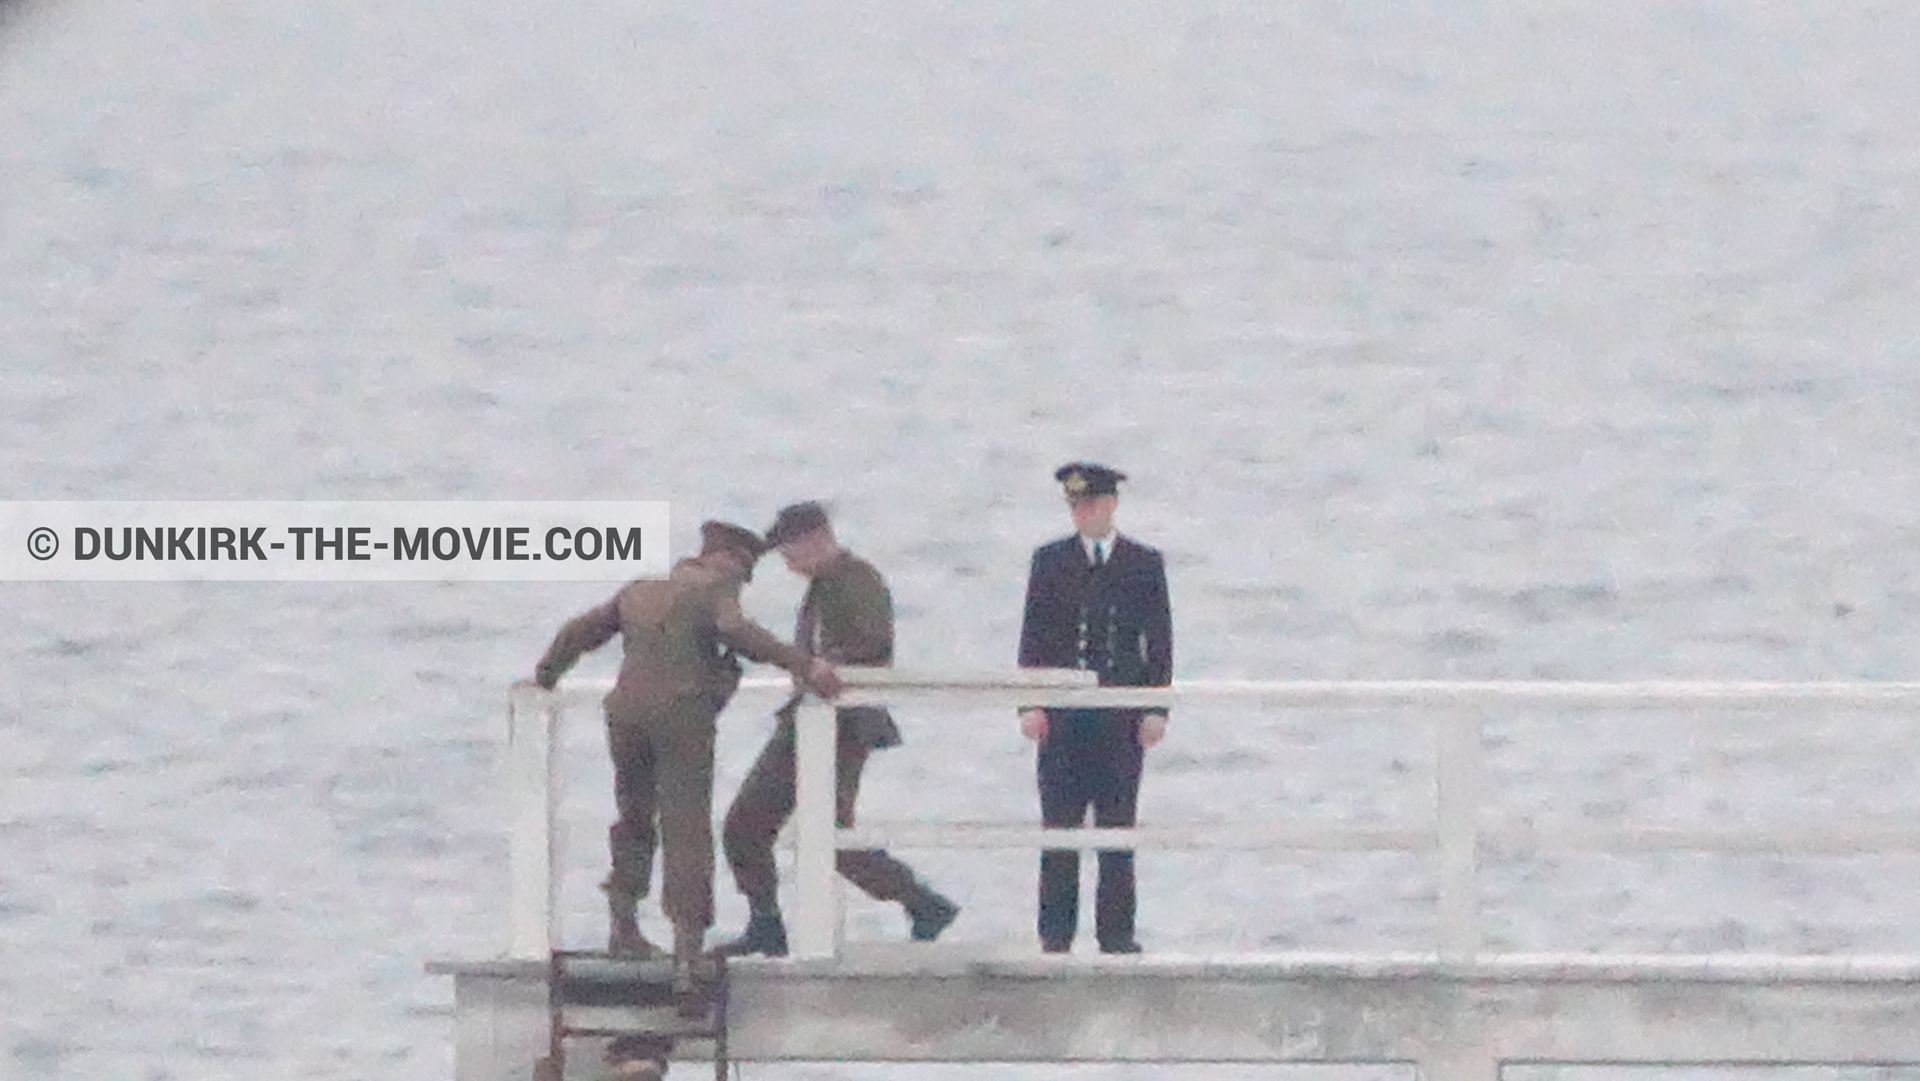 Fotos con actor, muelle del ESTE,  durante el rodaje de la película Dunkerque de Nolan